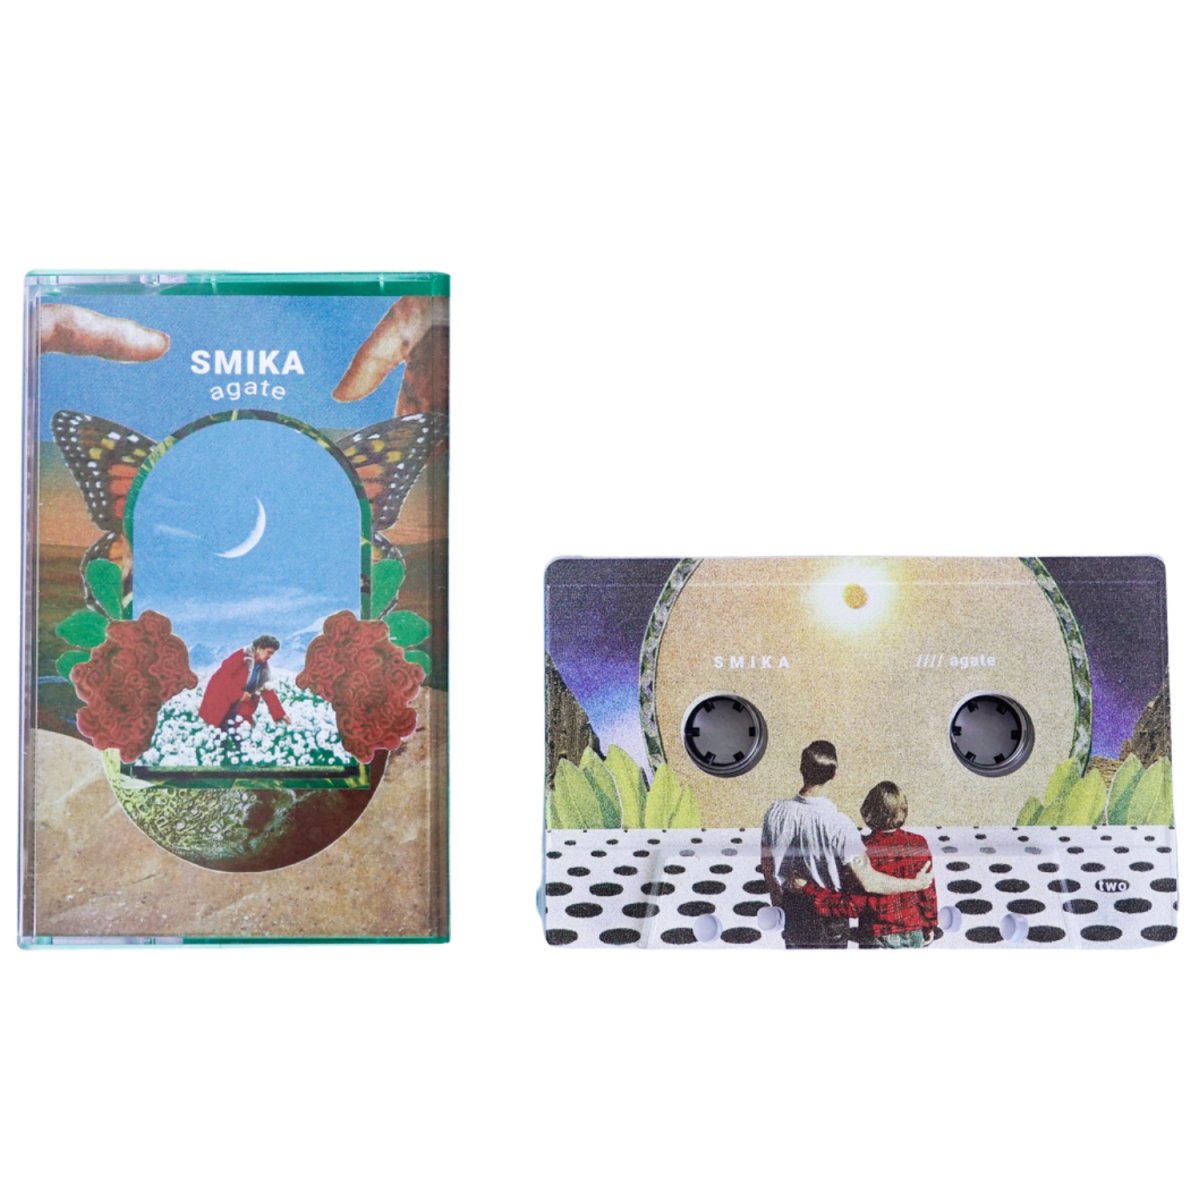 Smika - Agate - Inner Ocean Records